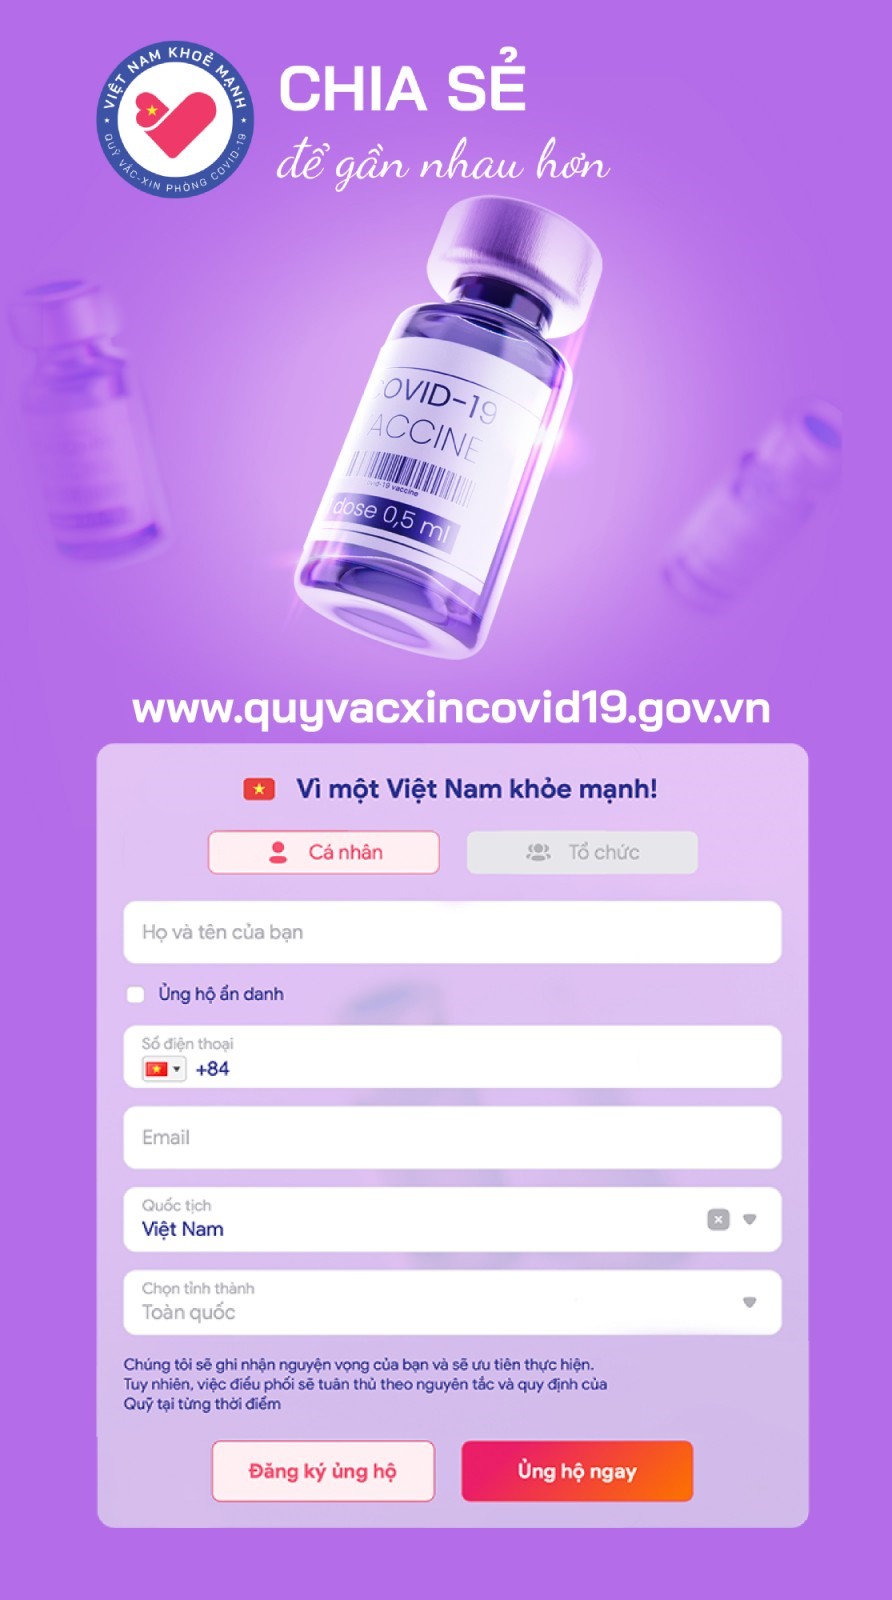 Giao diện trang web www.quyvacxincovid19.gov.vn rất thuận tiện cho người dân tham gia ủng hộ vào Quỹ Vắc xin Phòng chống COVID-19